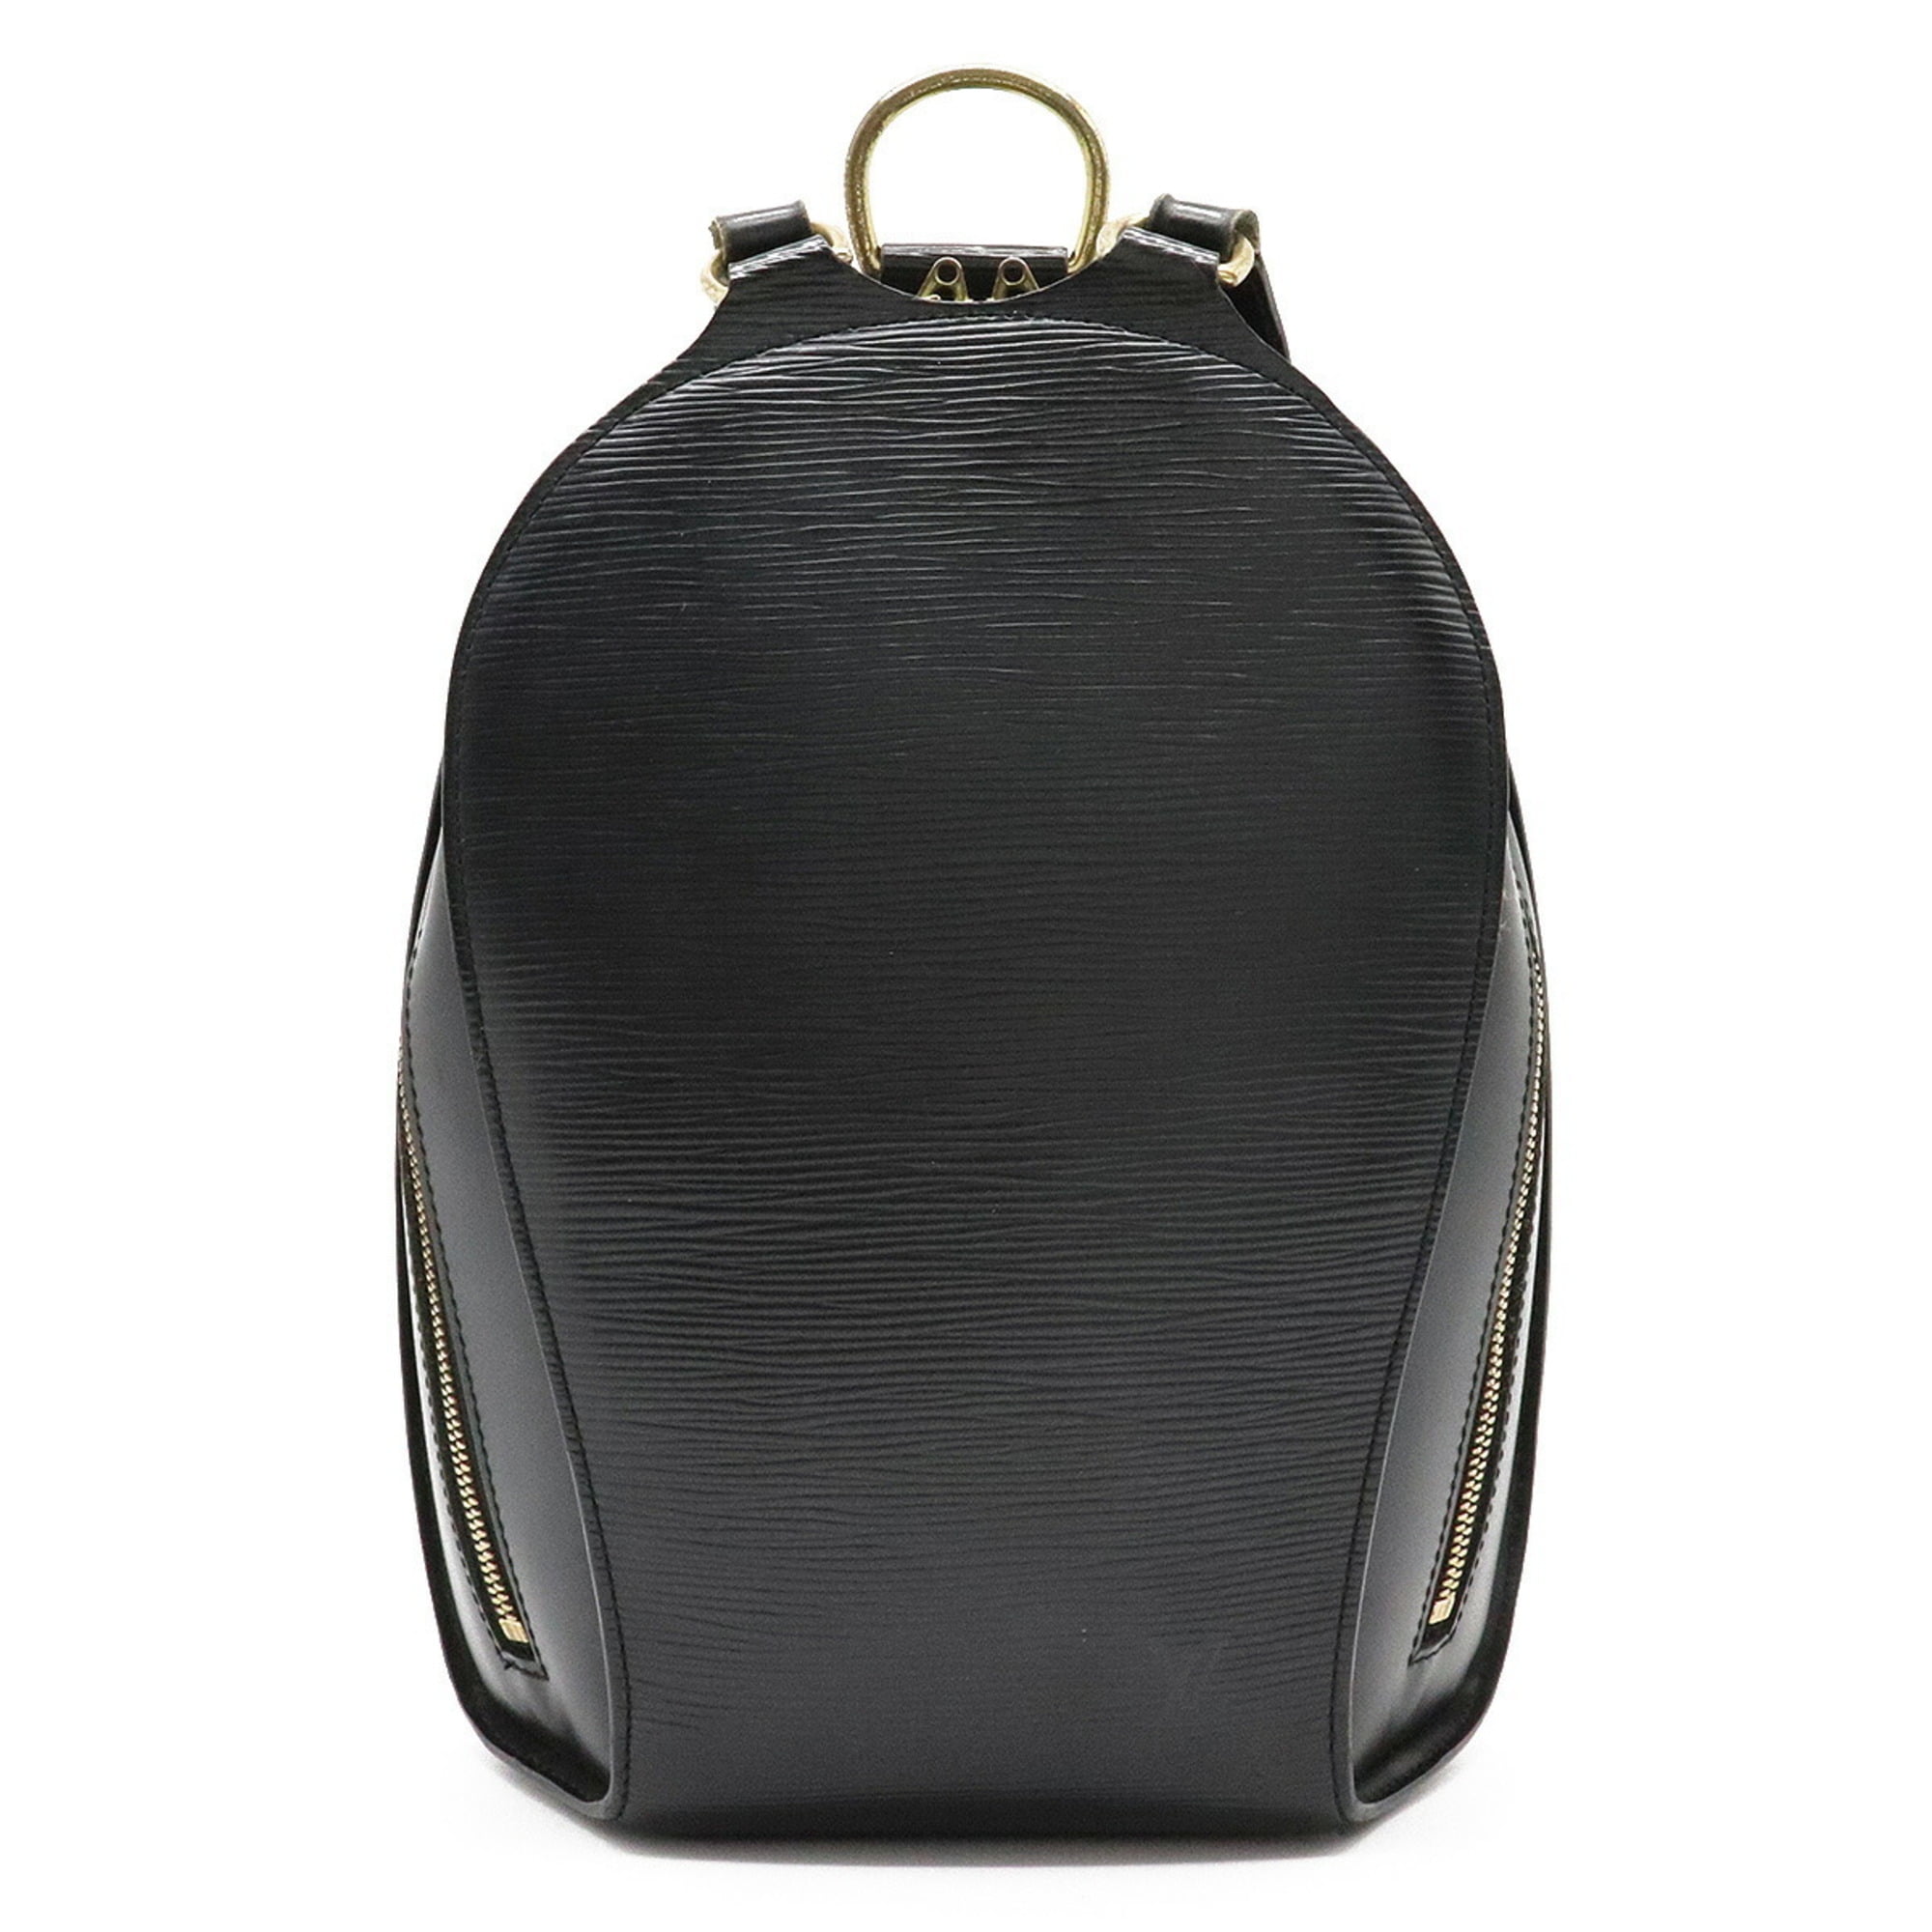 Authenticated Used LOUIS VUITTON Louis Vuitton Epi Mabillon Rucksack  Backpack Shoulder Bag Leather Noir Black M52232 